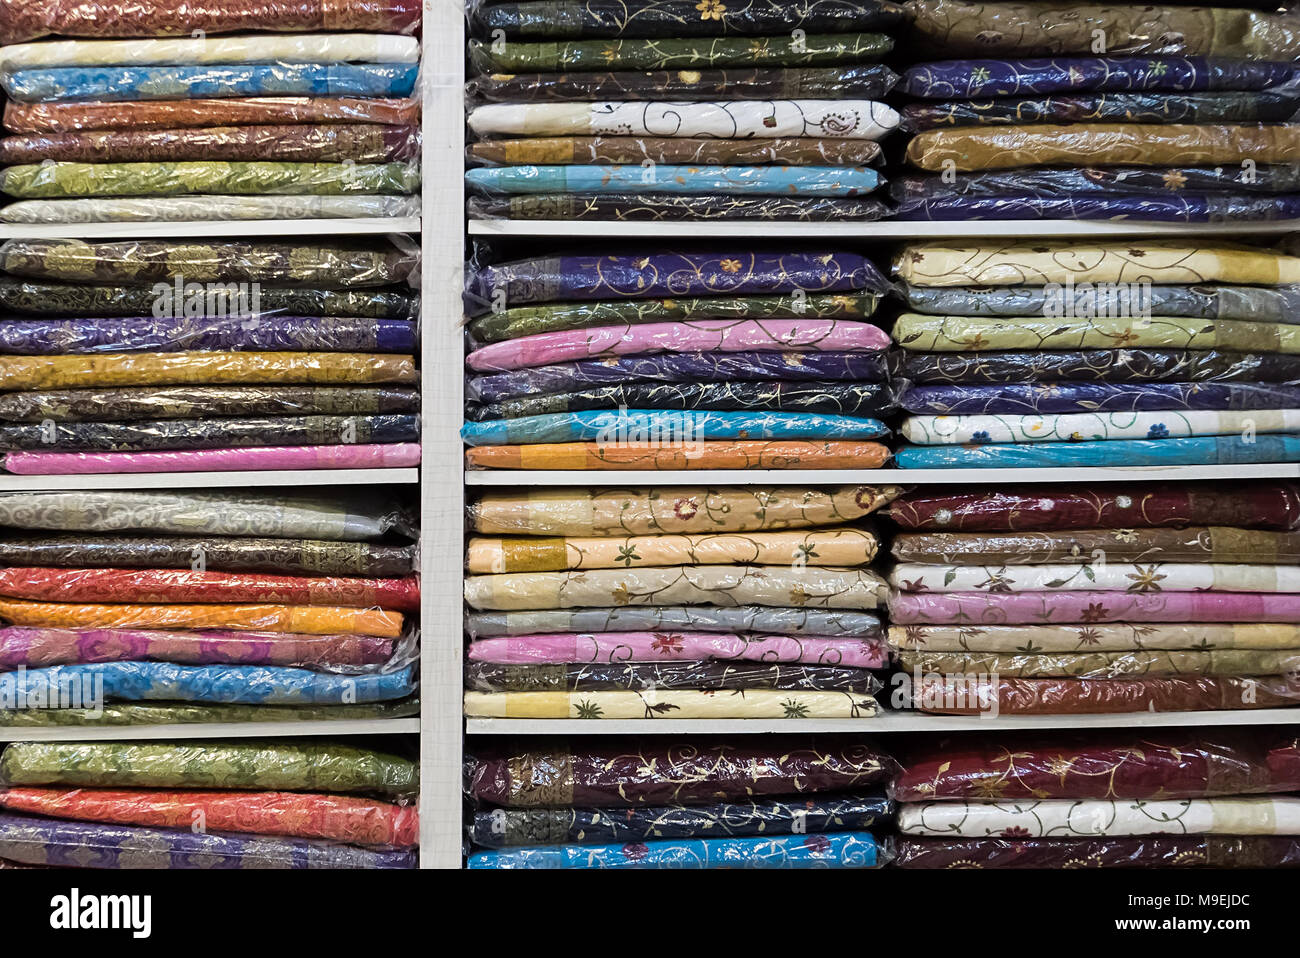 Étagère avec des vêtements colorés. La Fédération nationale indienne des vêtements. Sari's dans le magasin sur l'étagère. Les femmes saree. New Delhi Inde main Bazaar Banque D'Images